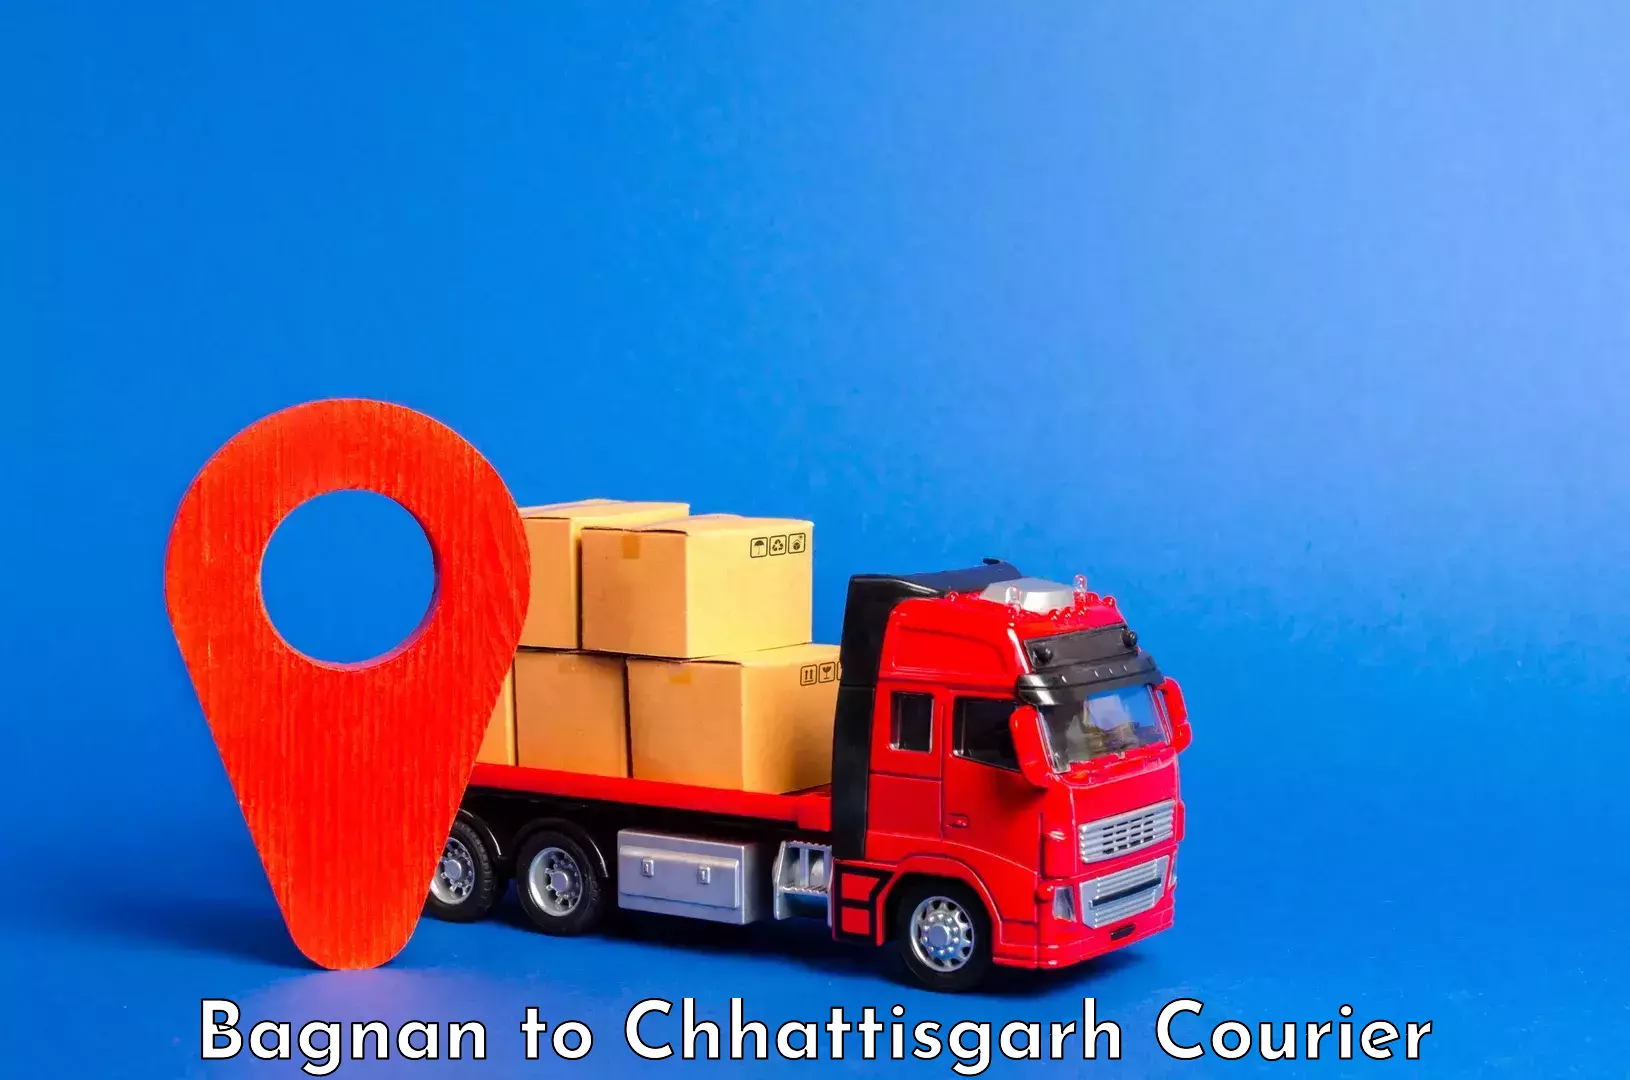 Baggage shipping service Bagnan to Bijapur Chhattisgarh